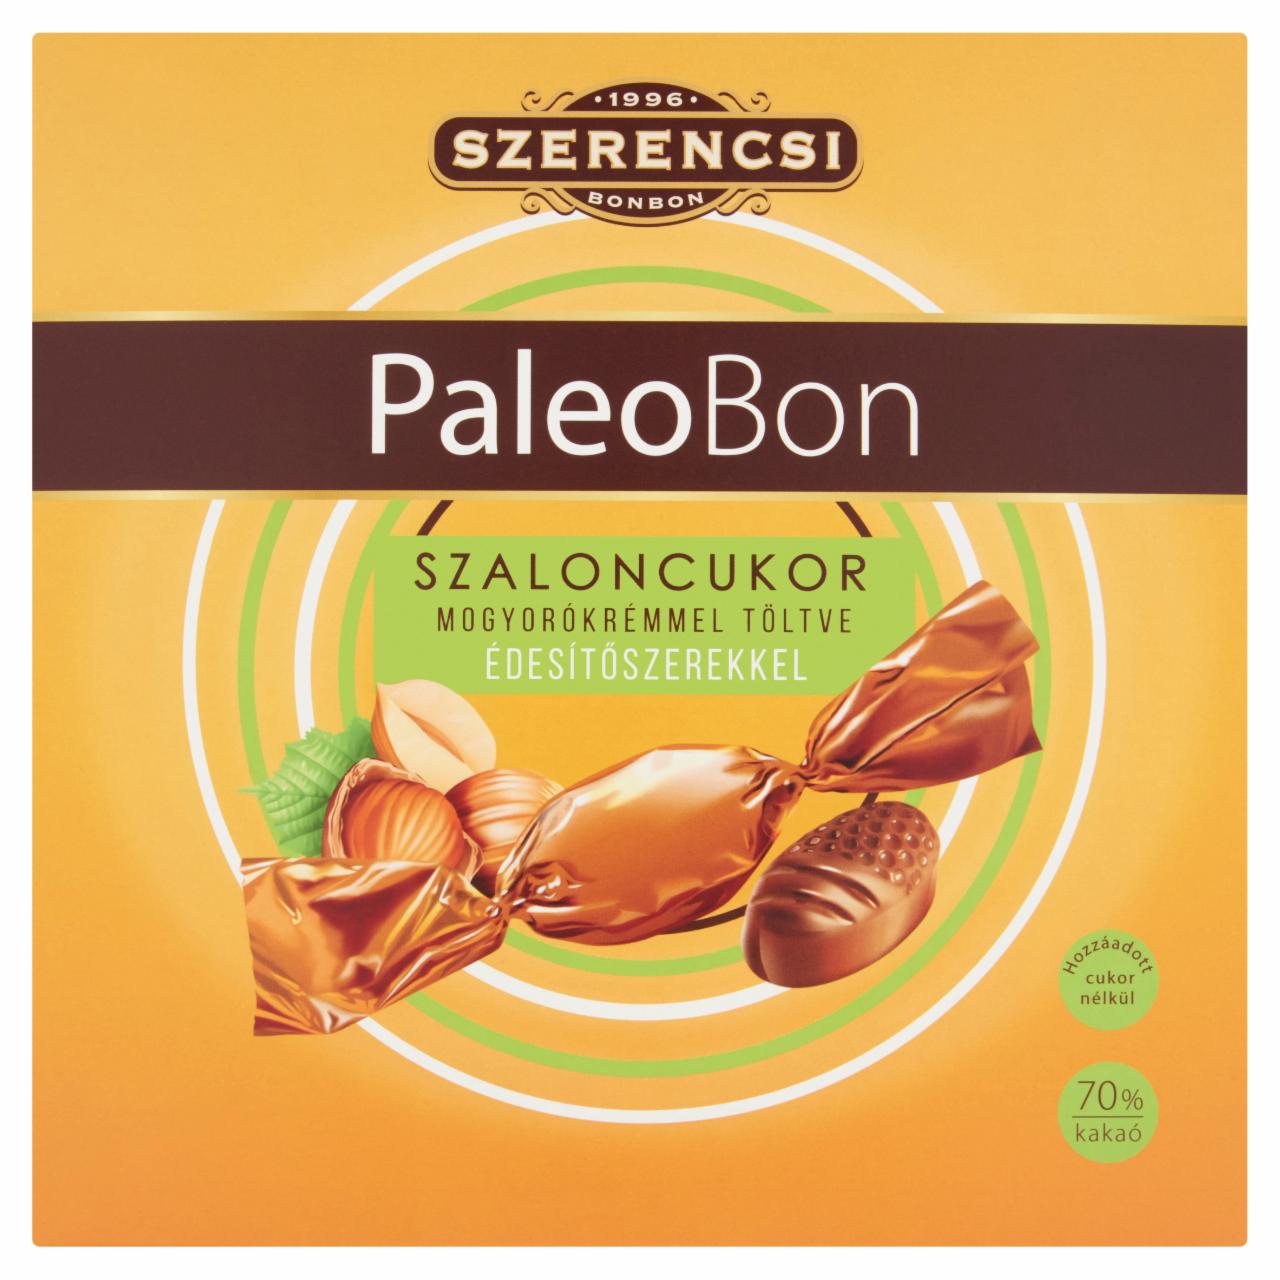 Képek - Szerencsi PaleoBon étcsokoládé szaloncukor mogyorókrémmel töltve, édesítőszerekkel 250 g